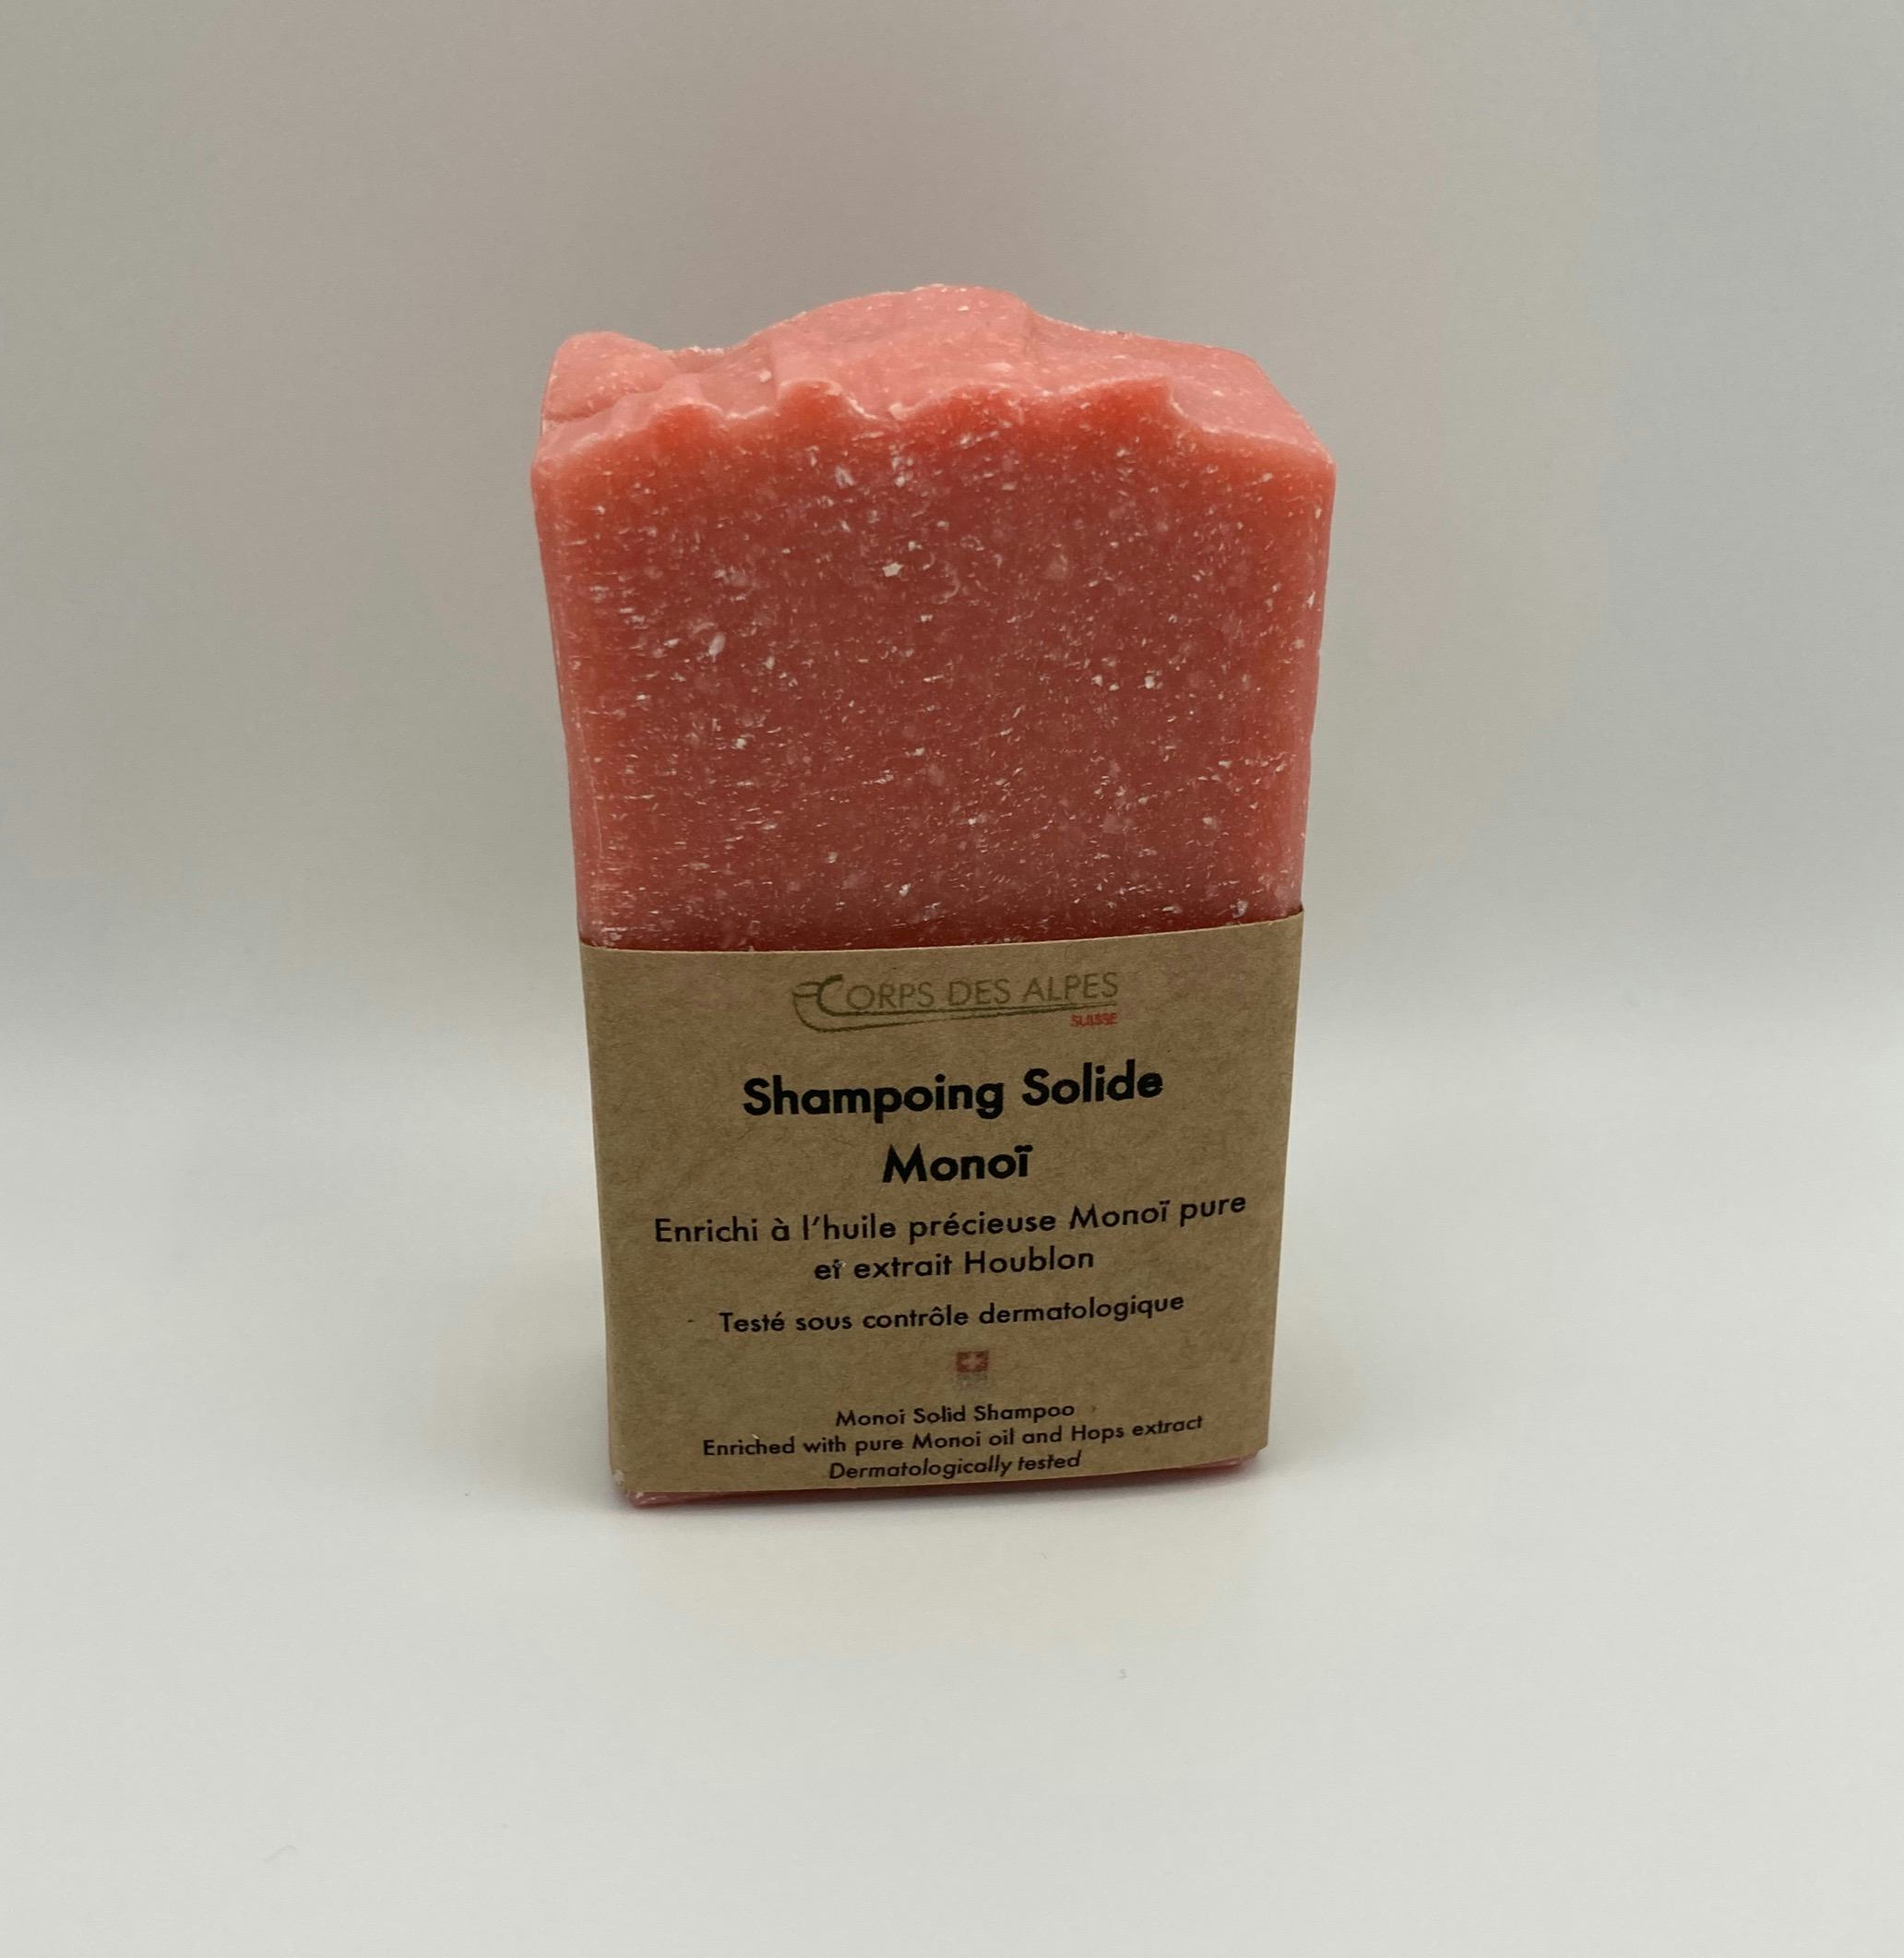 Shampoing solide Monoï, produit artisanal en vente directe en Suisse